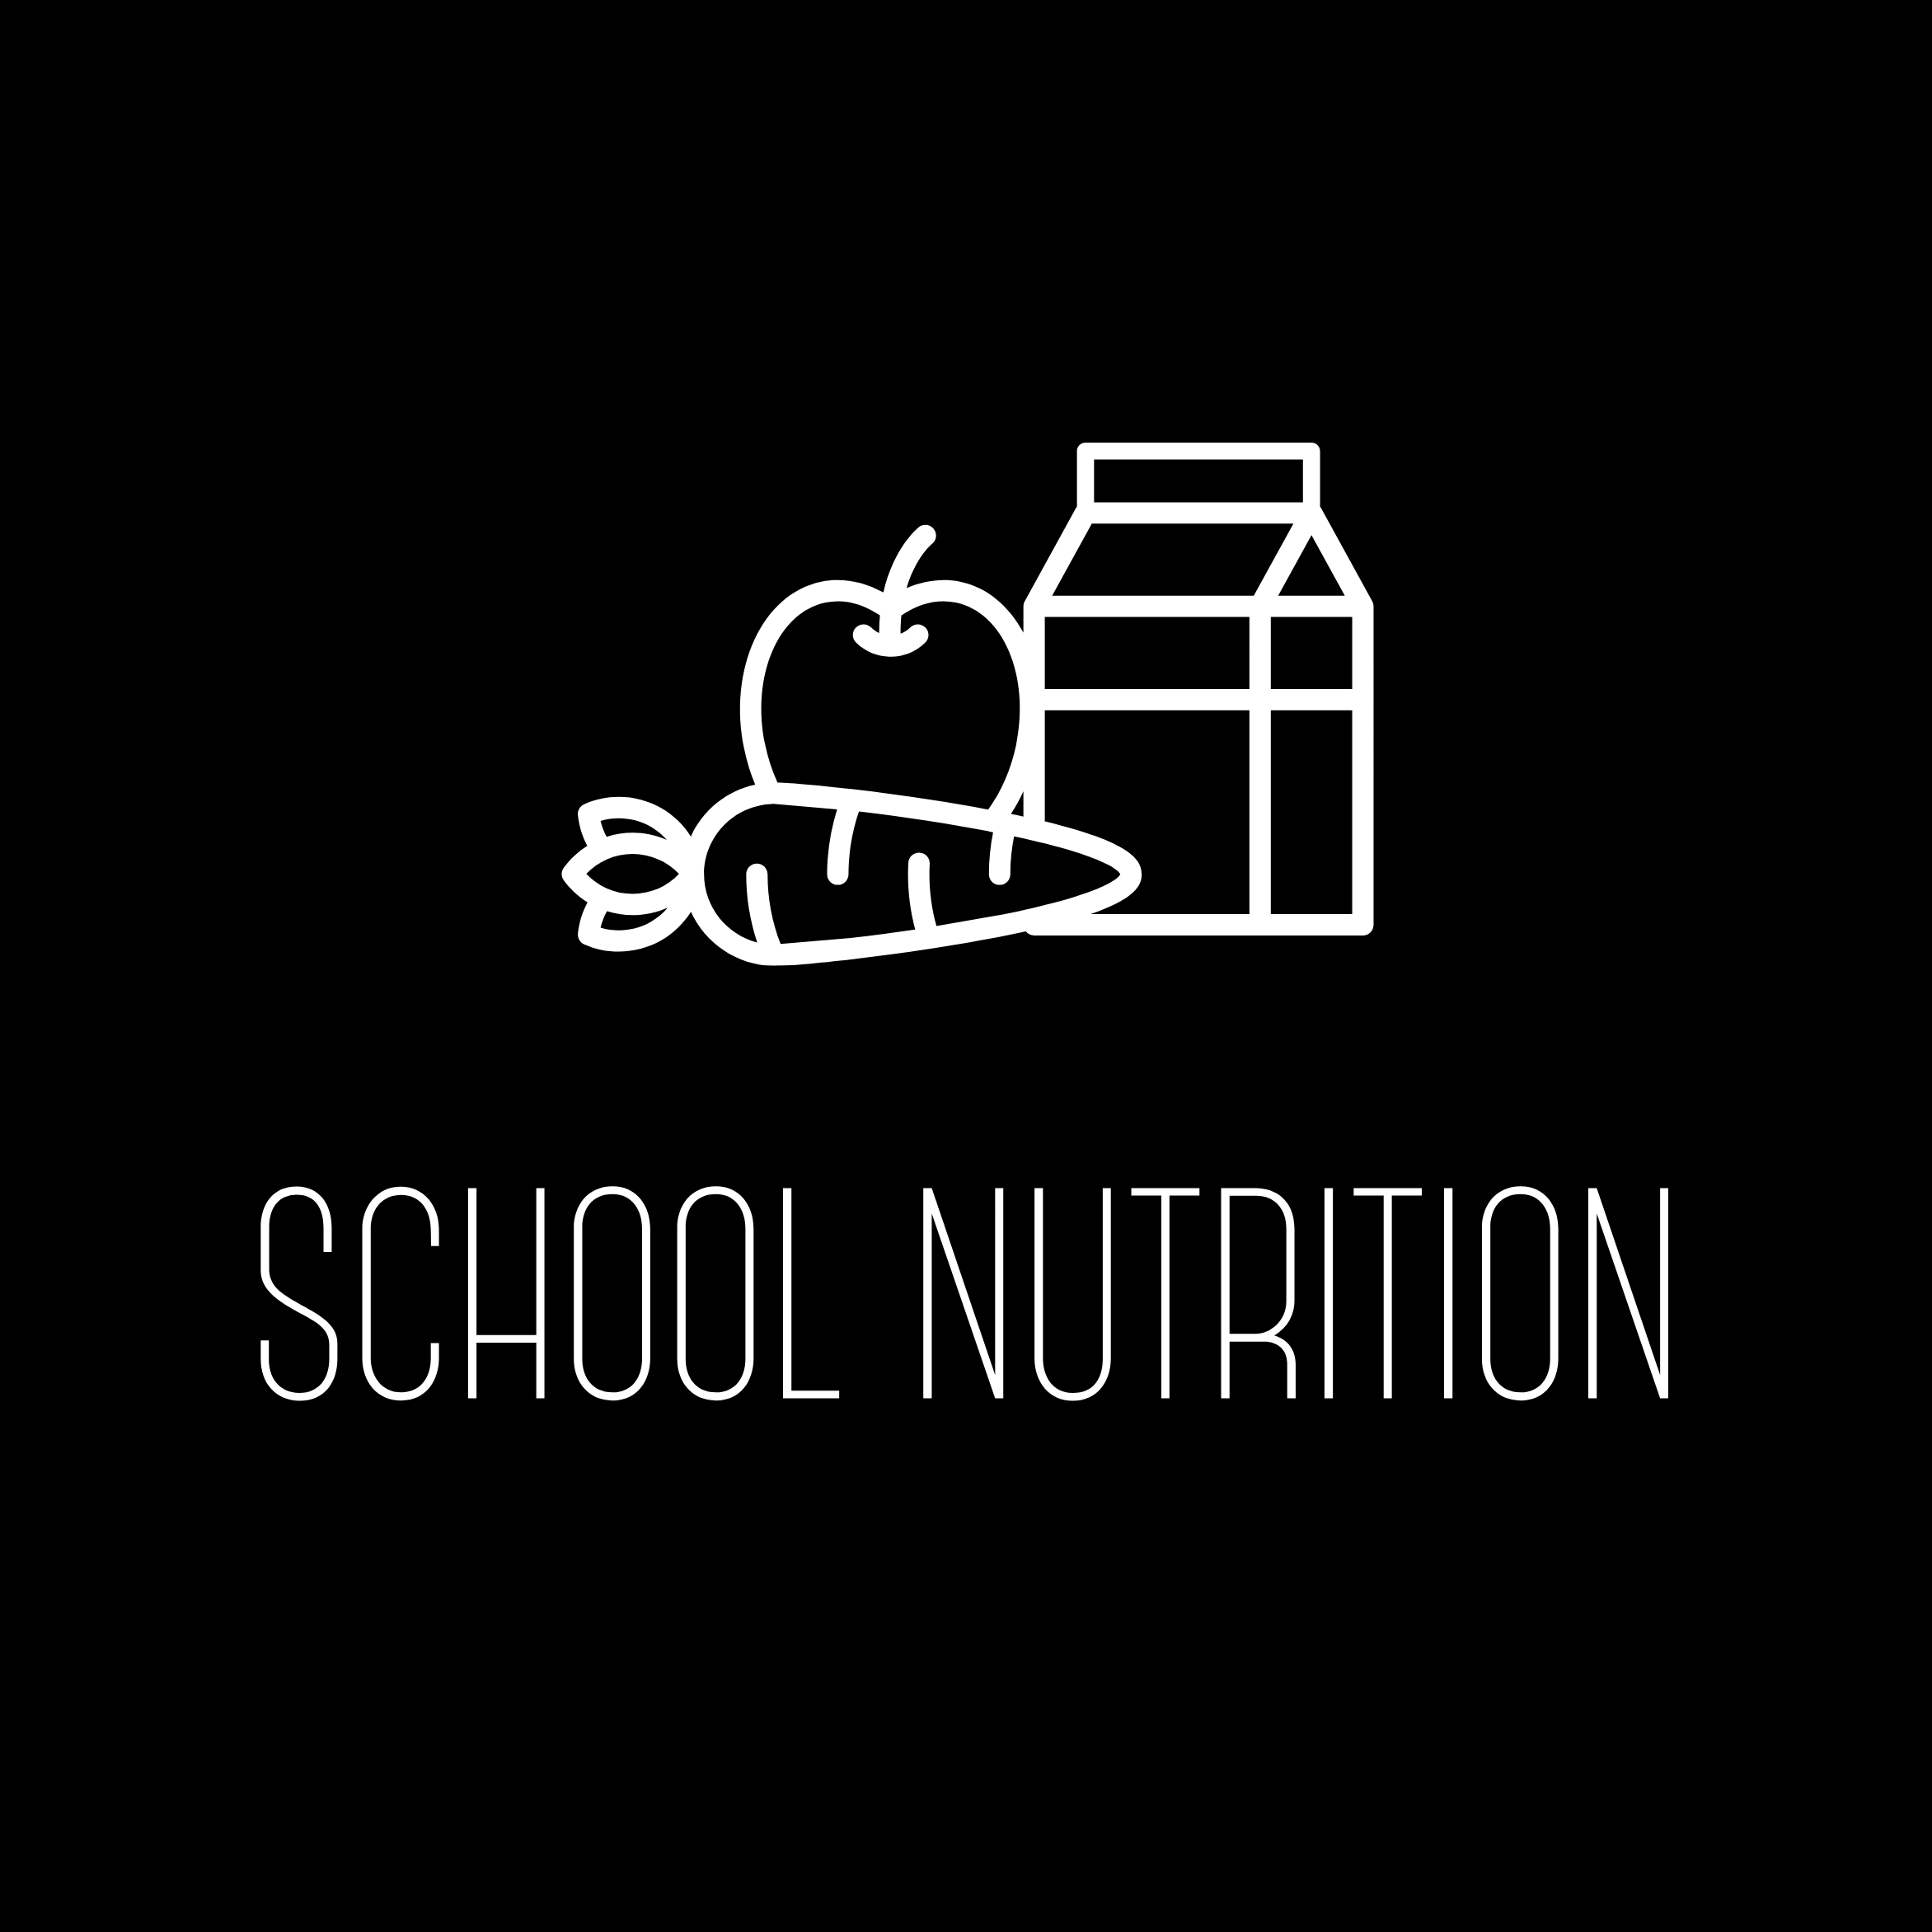 School Nutrition